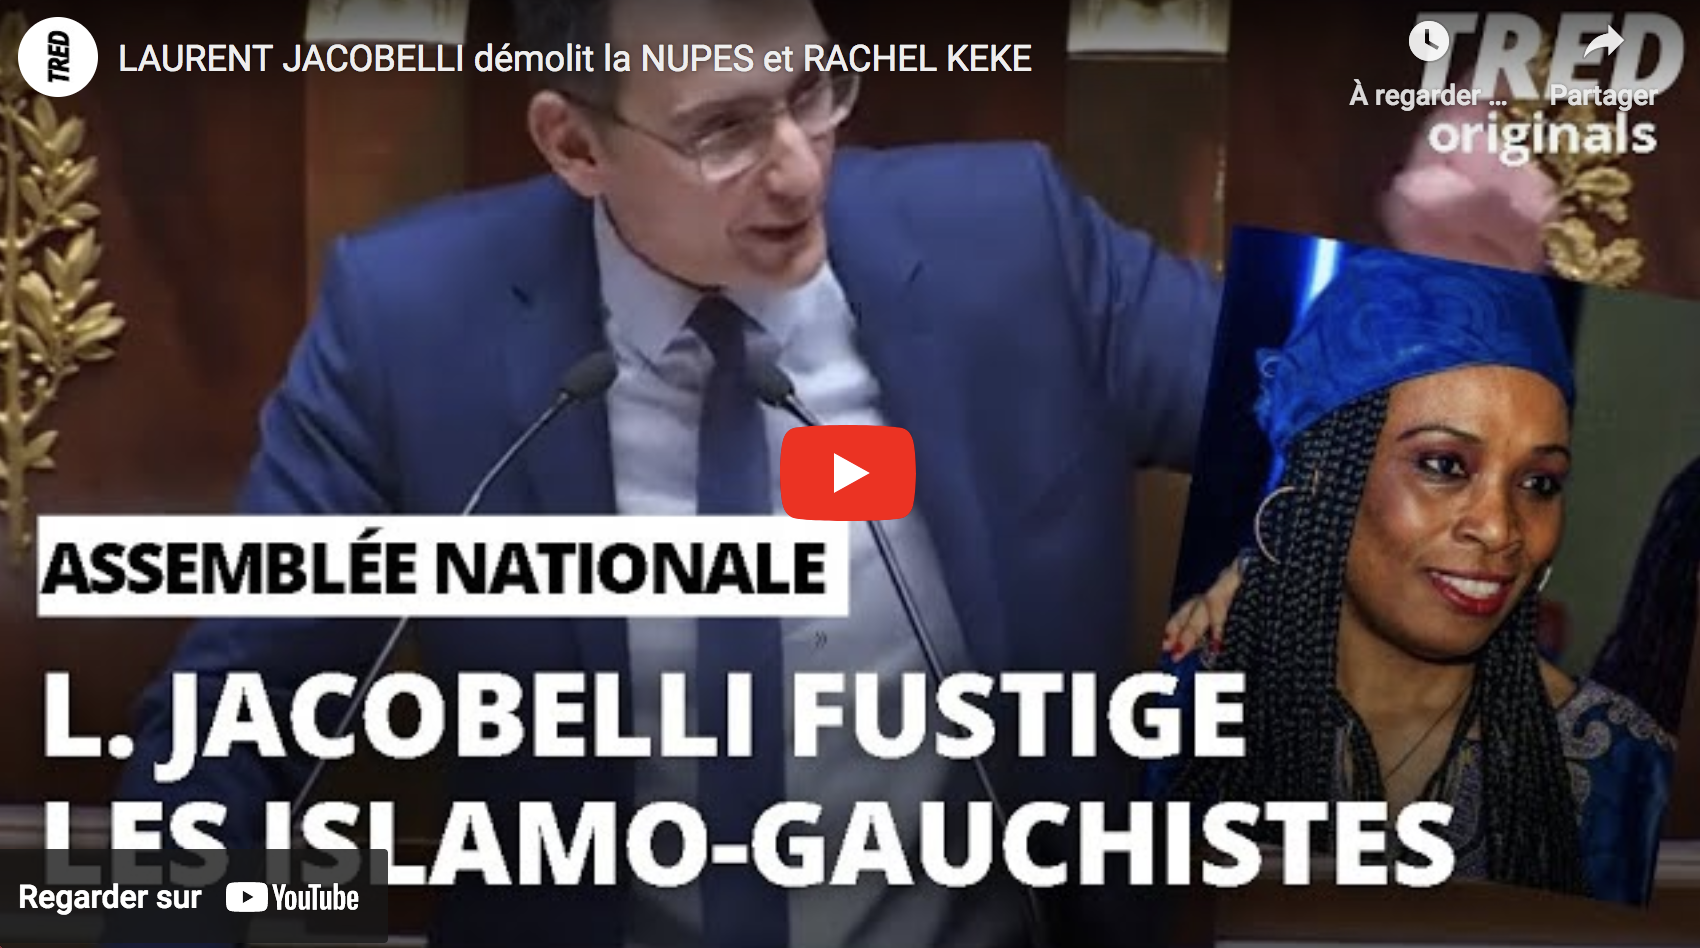 Assemblée nationale : Laurent Jacobelli démolit la NUPES et Rachel Keke (VIDÉO)